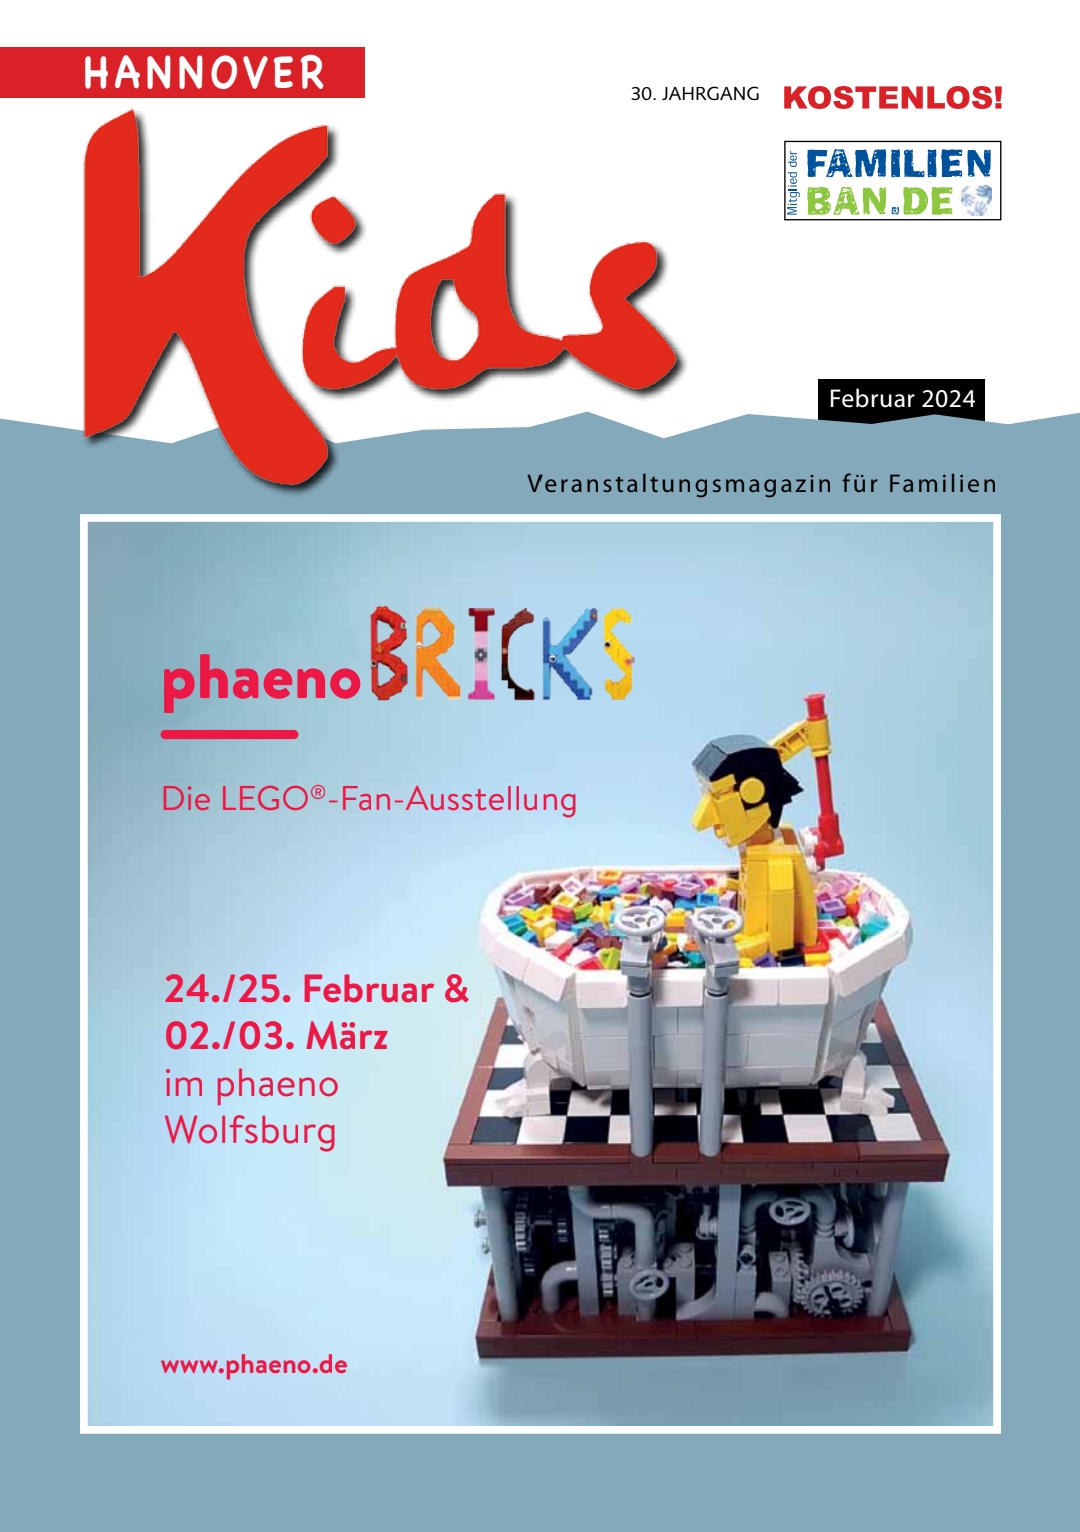 Titelbild der Ausgabe vom Februar 2024